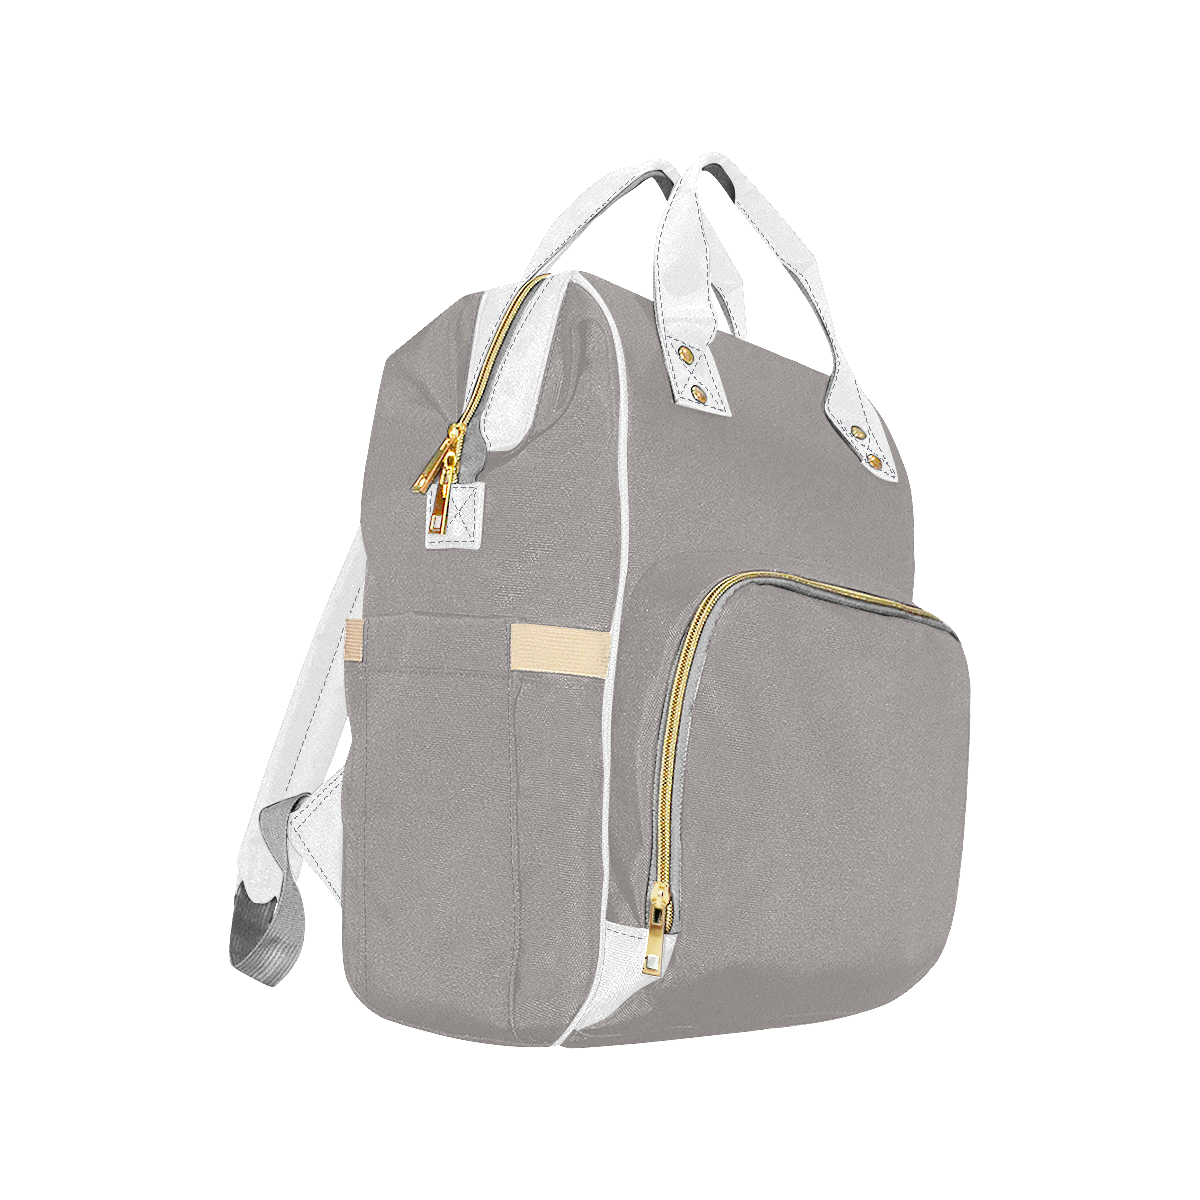 Ash Multi-Function Diaper Backpack/Diaper Bag (Model 1688)